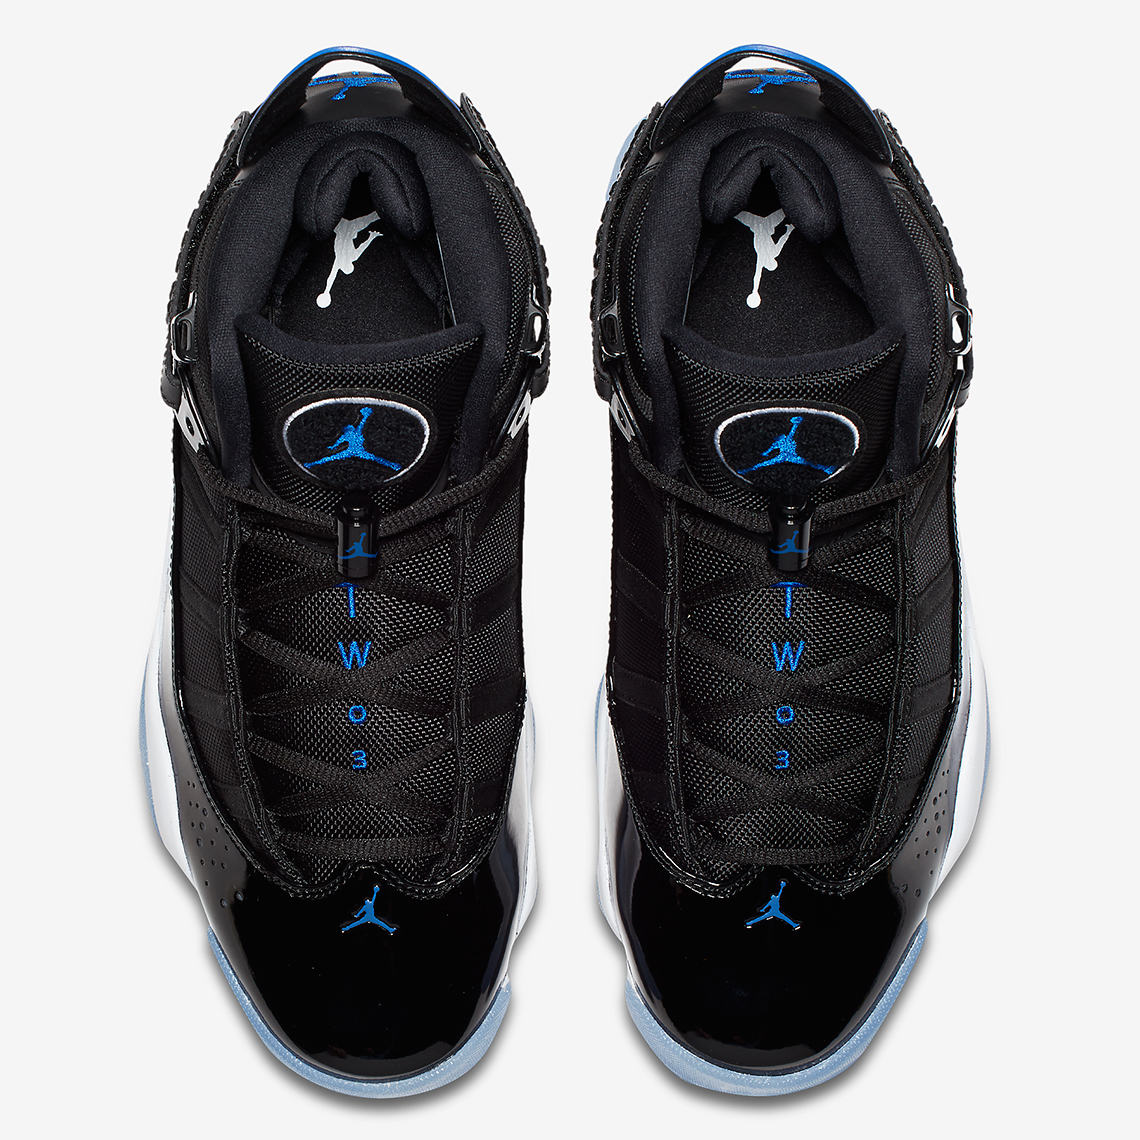 Jordan 6 Rings Jam" 322992-016 Coming Soon | SneakerNews.com